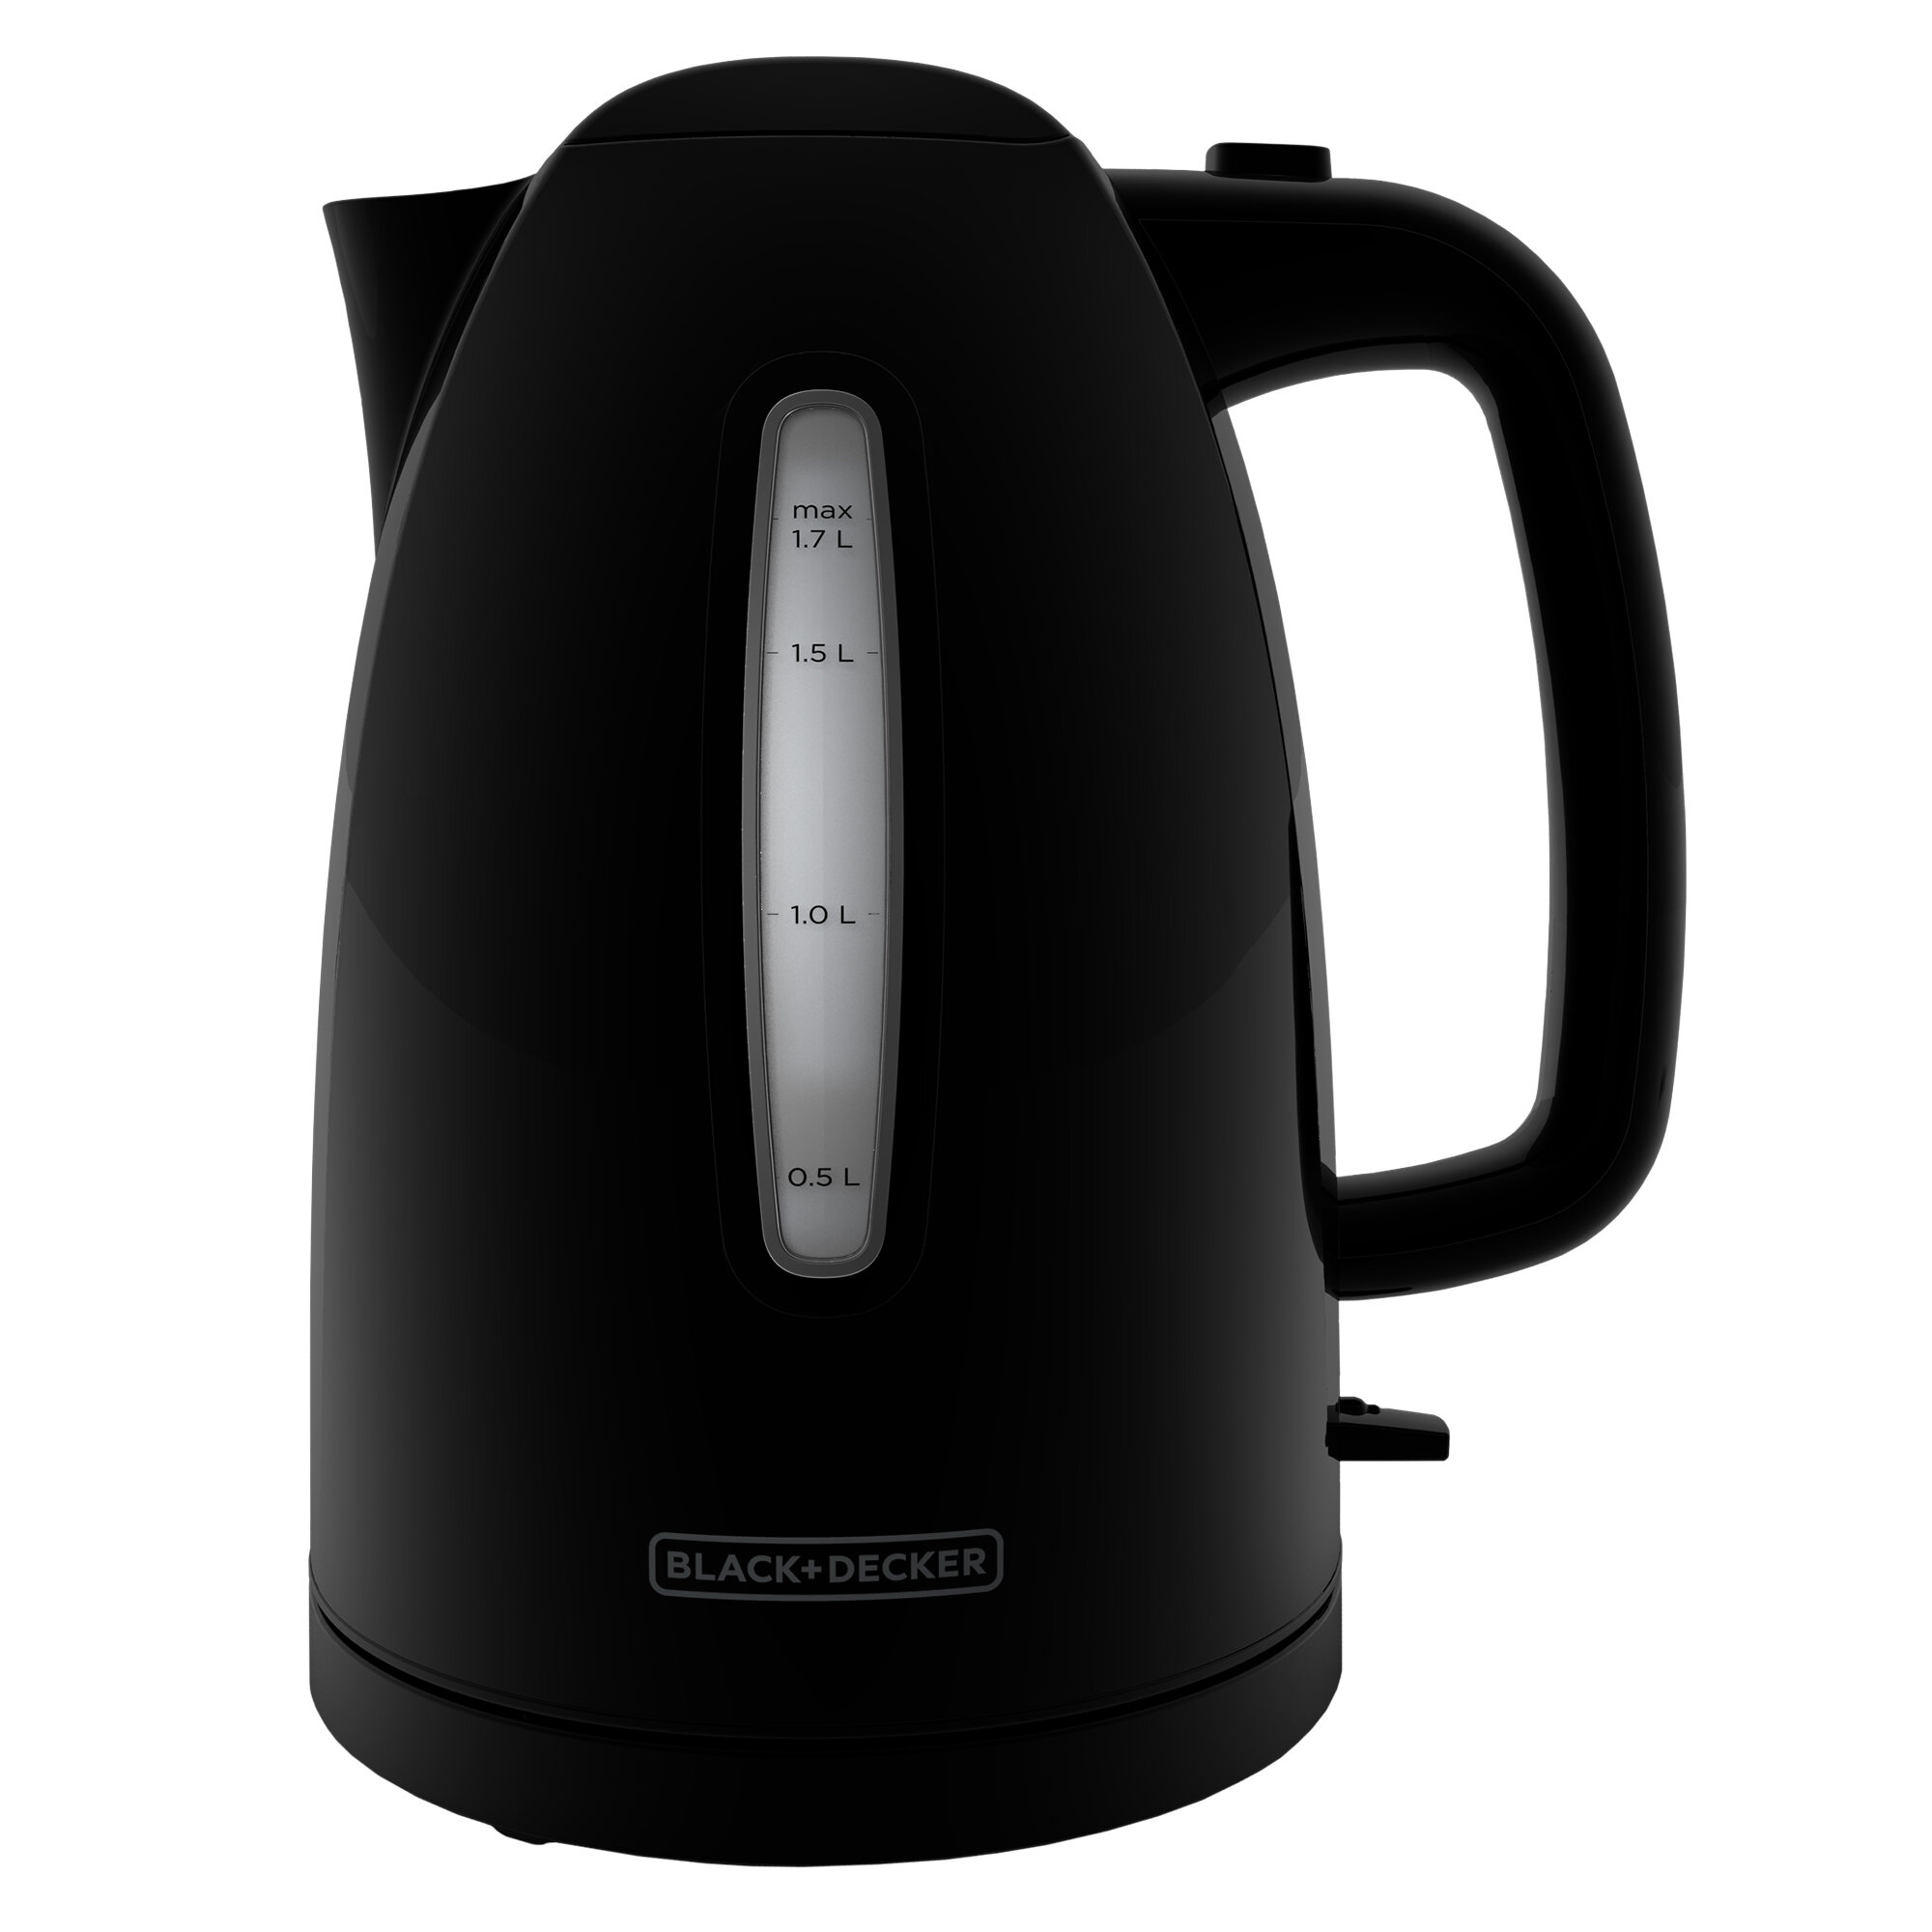 black decker water kettle